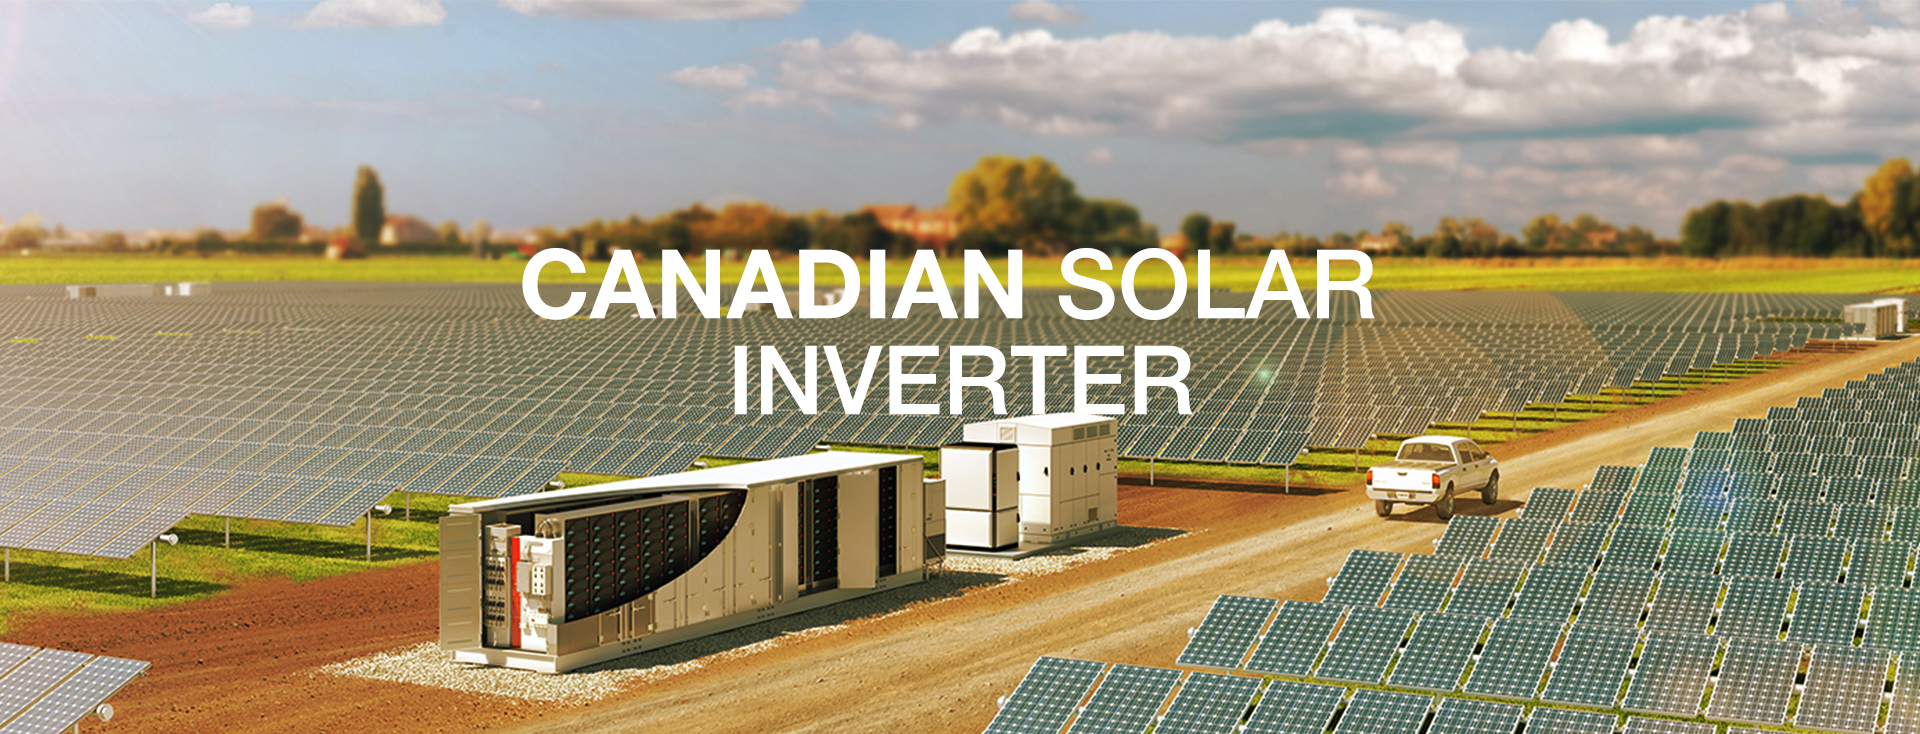 CSI-Canadian-solar-inverter